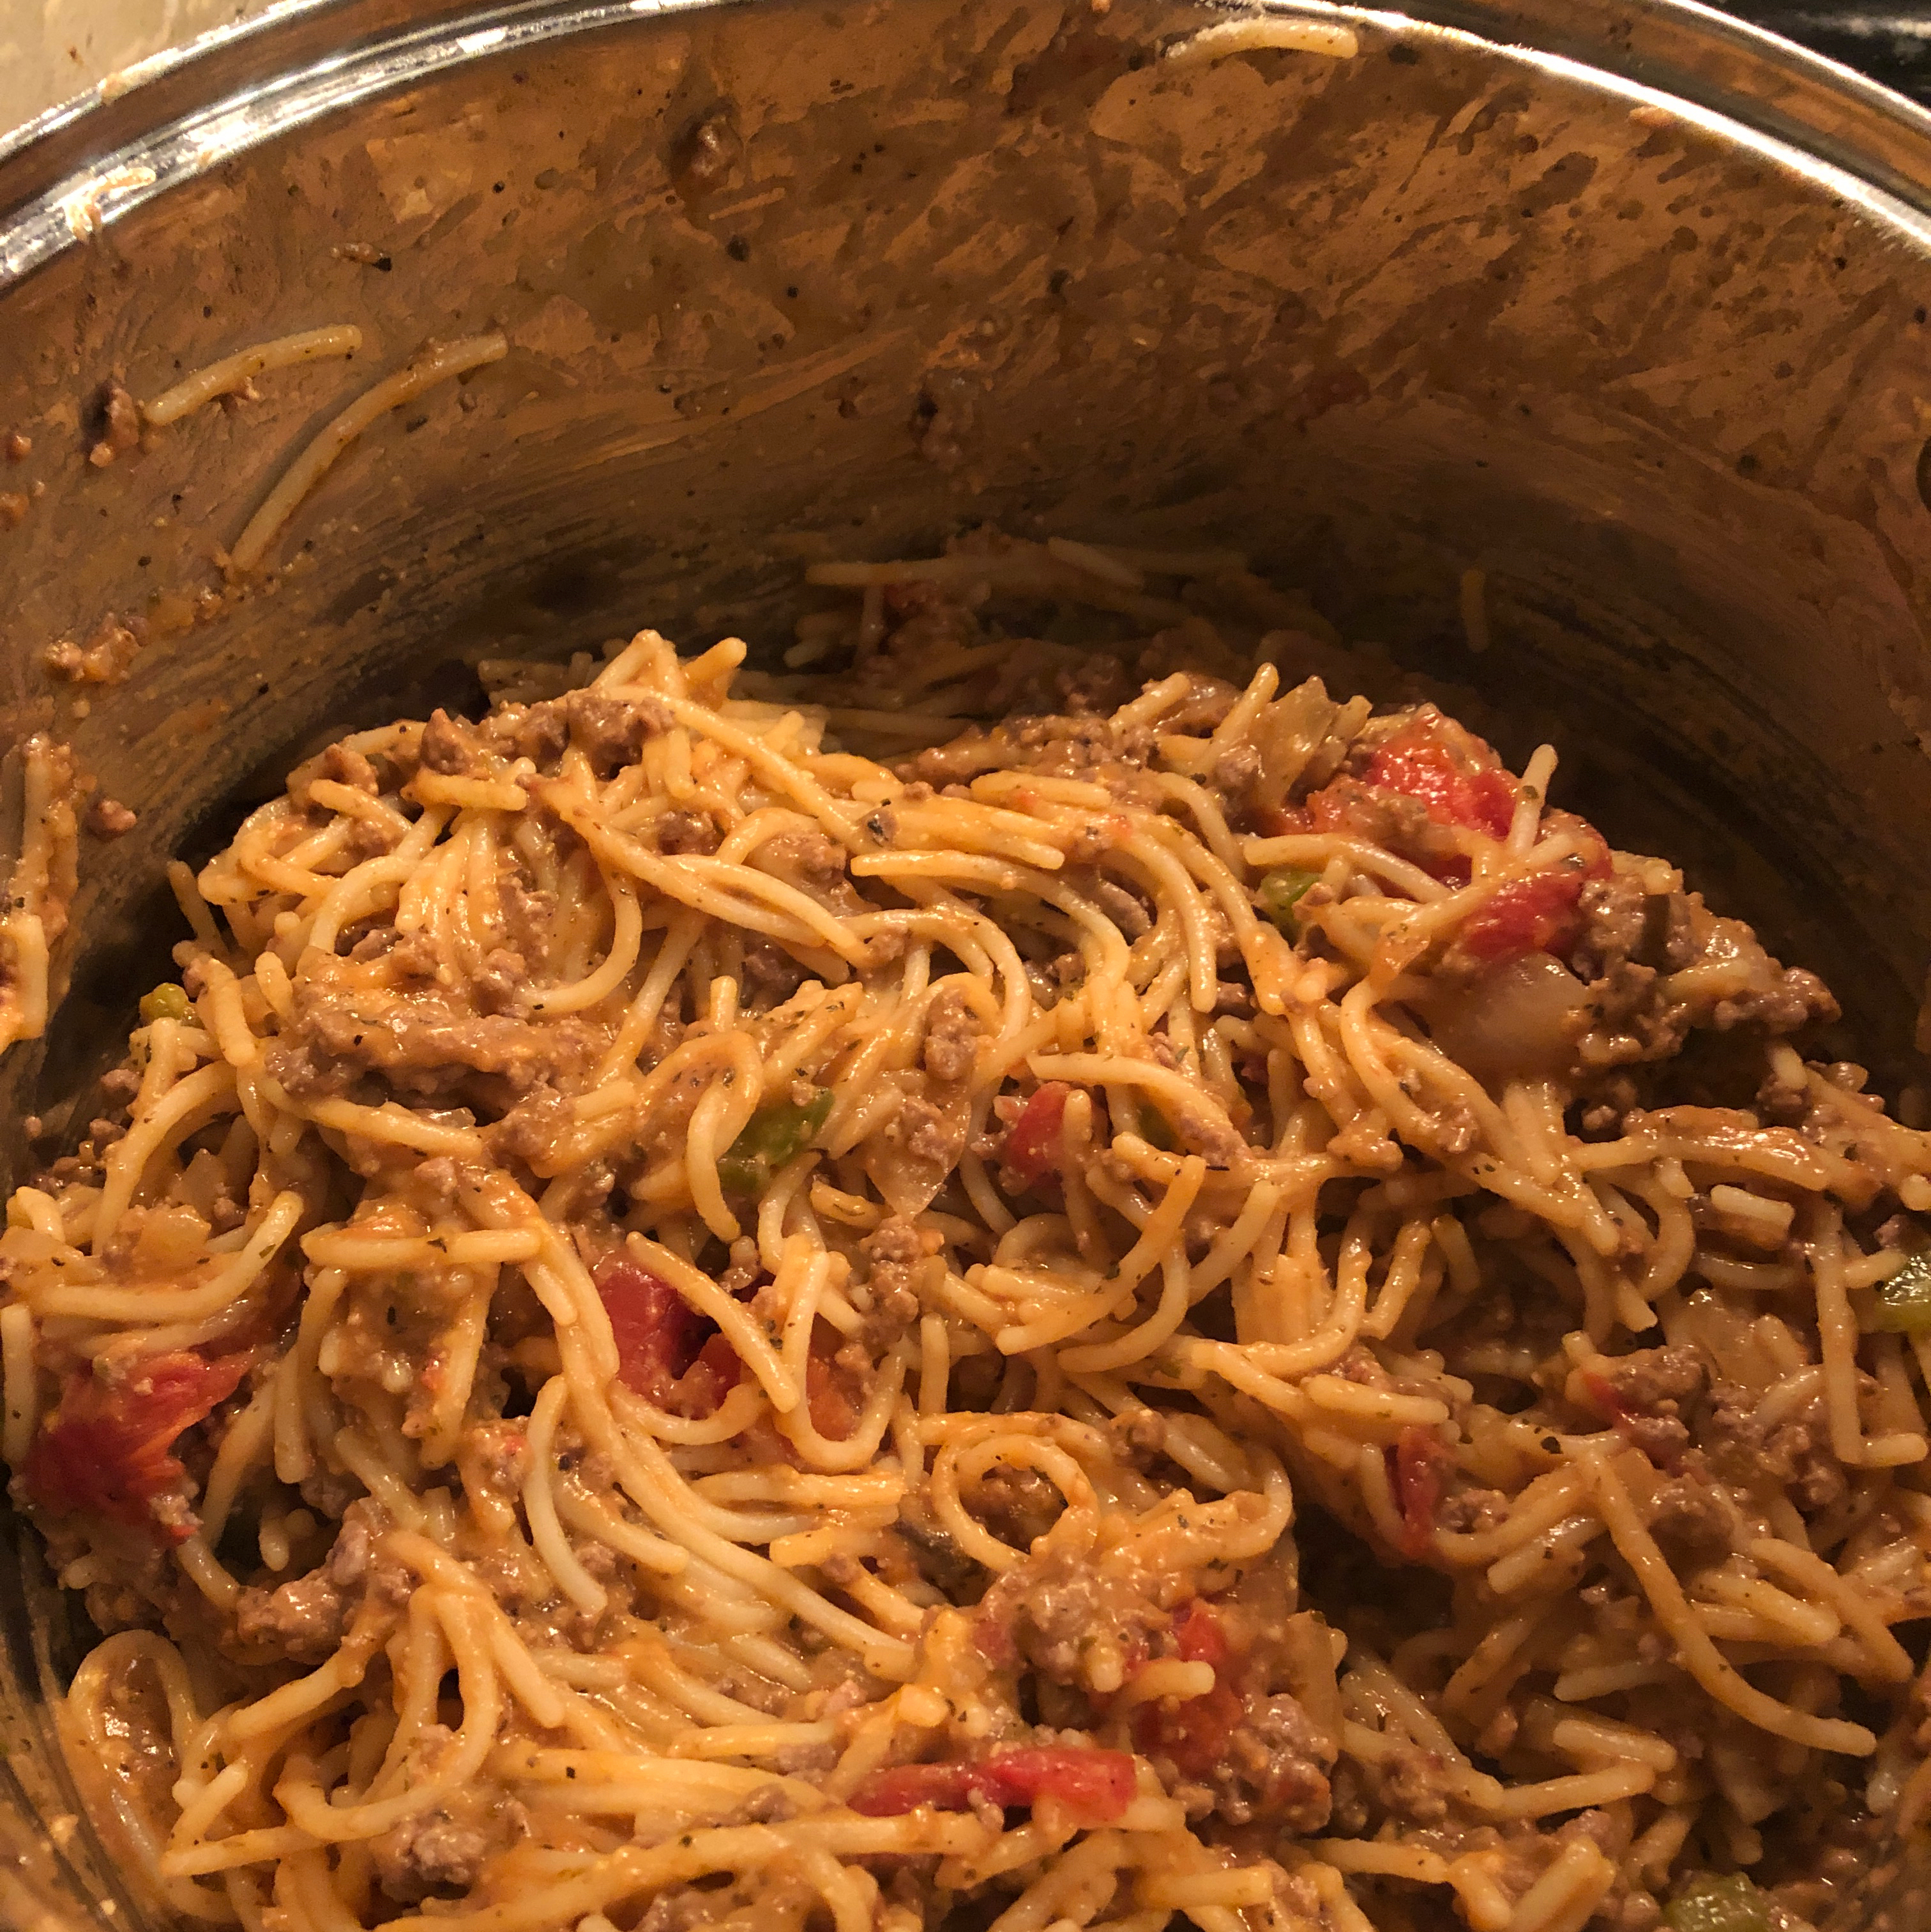 Spaghetti Skillet Dinner slerpderp